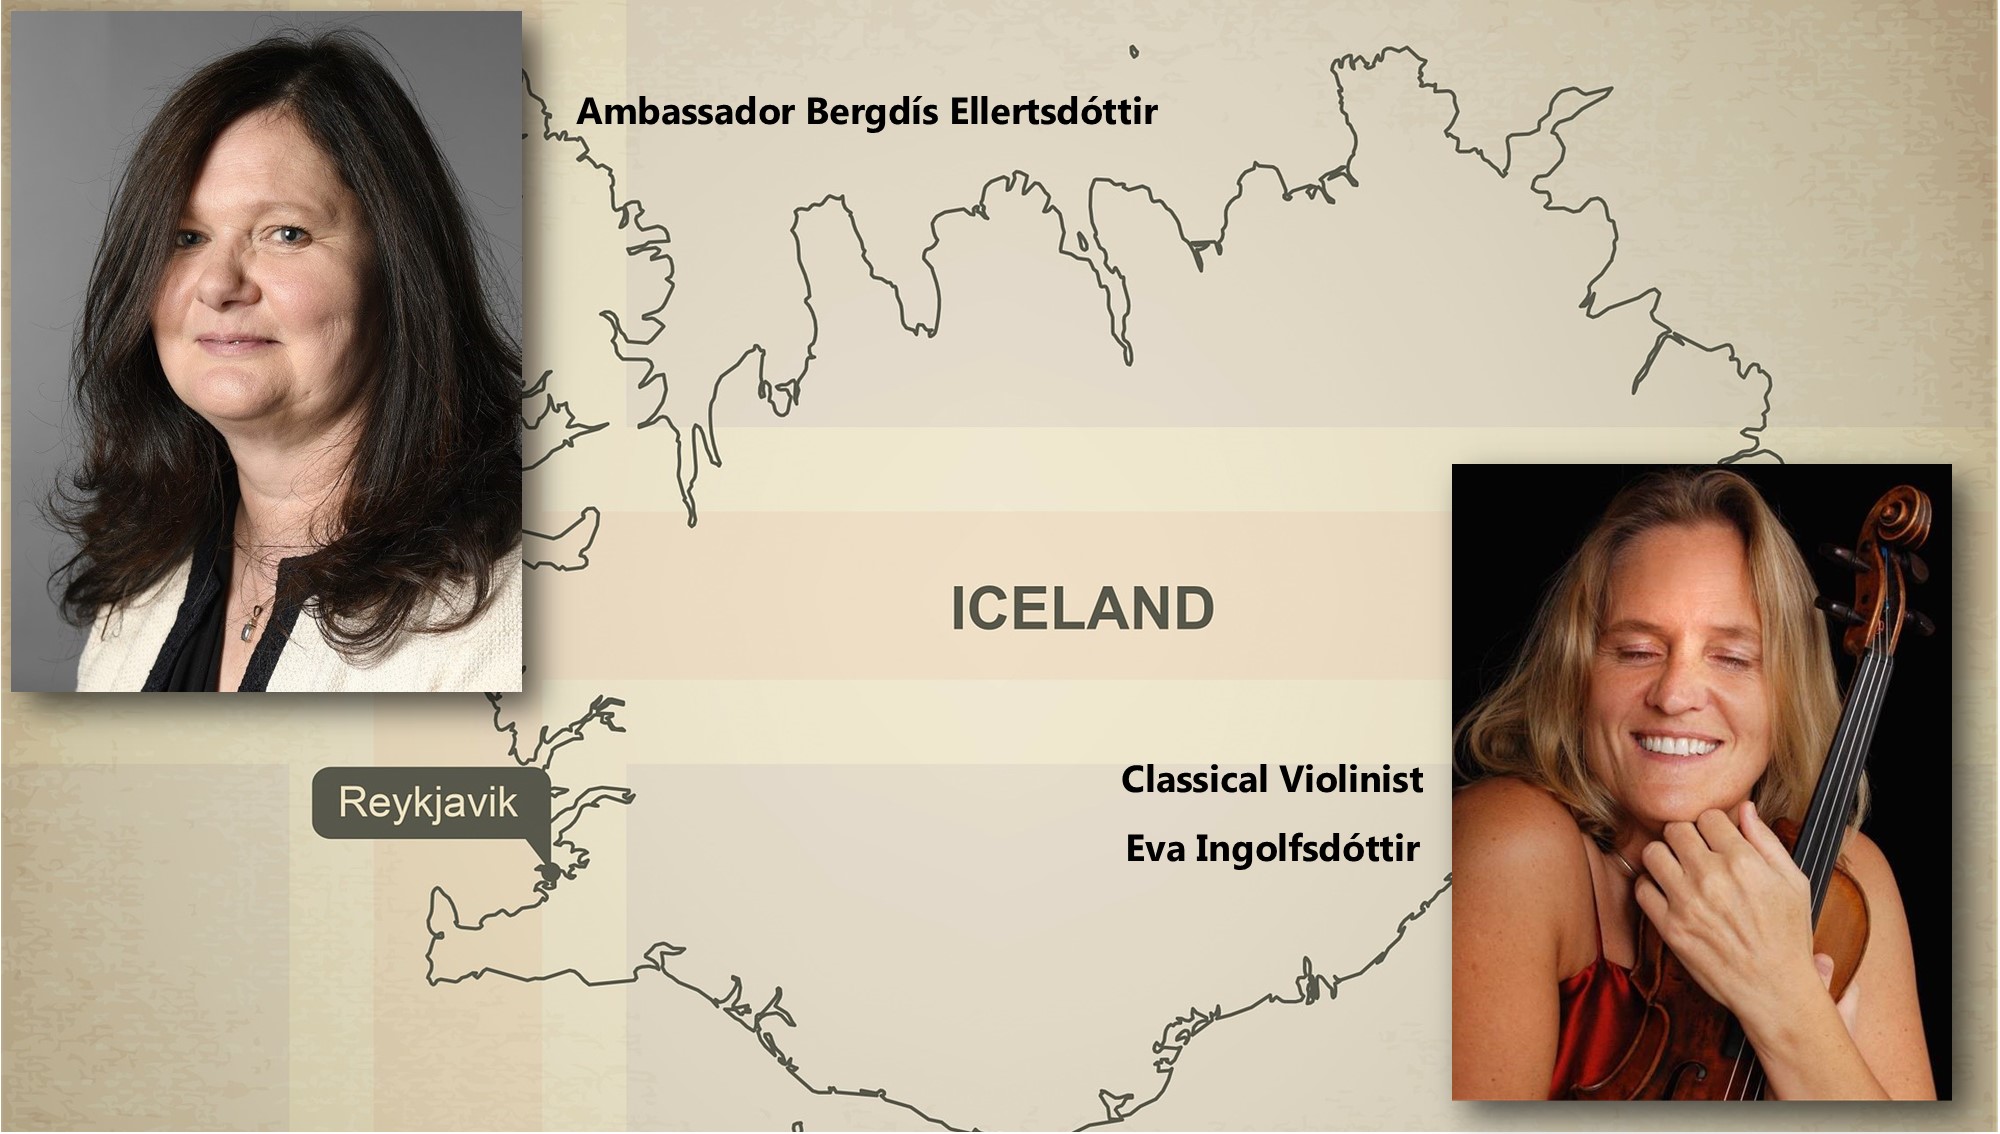 Icelandic Ambassador and Violinist Visit, March 29